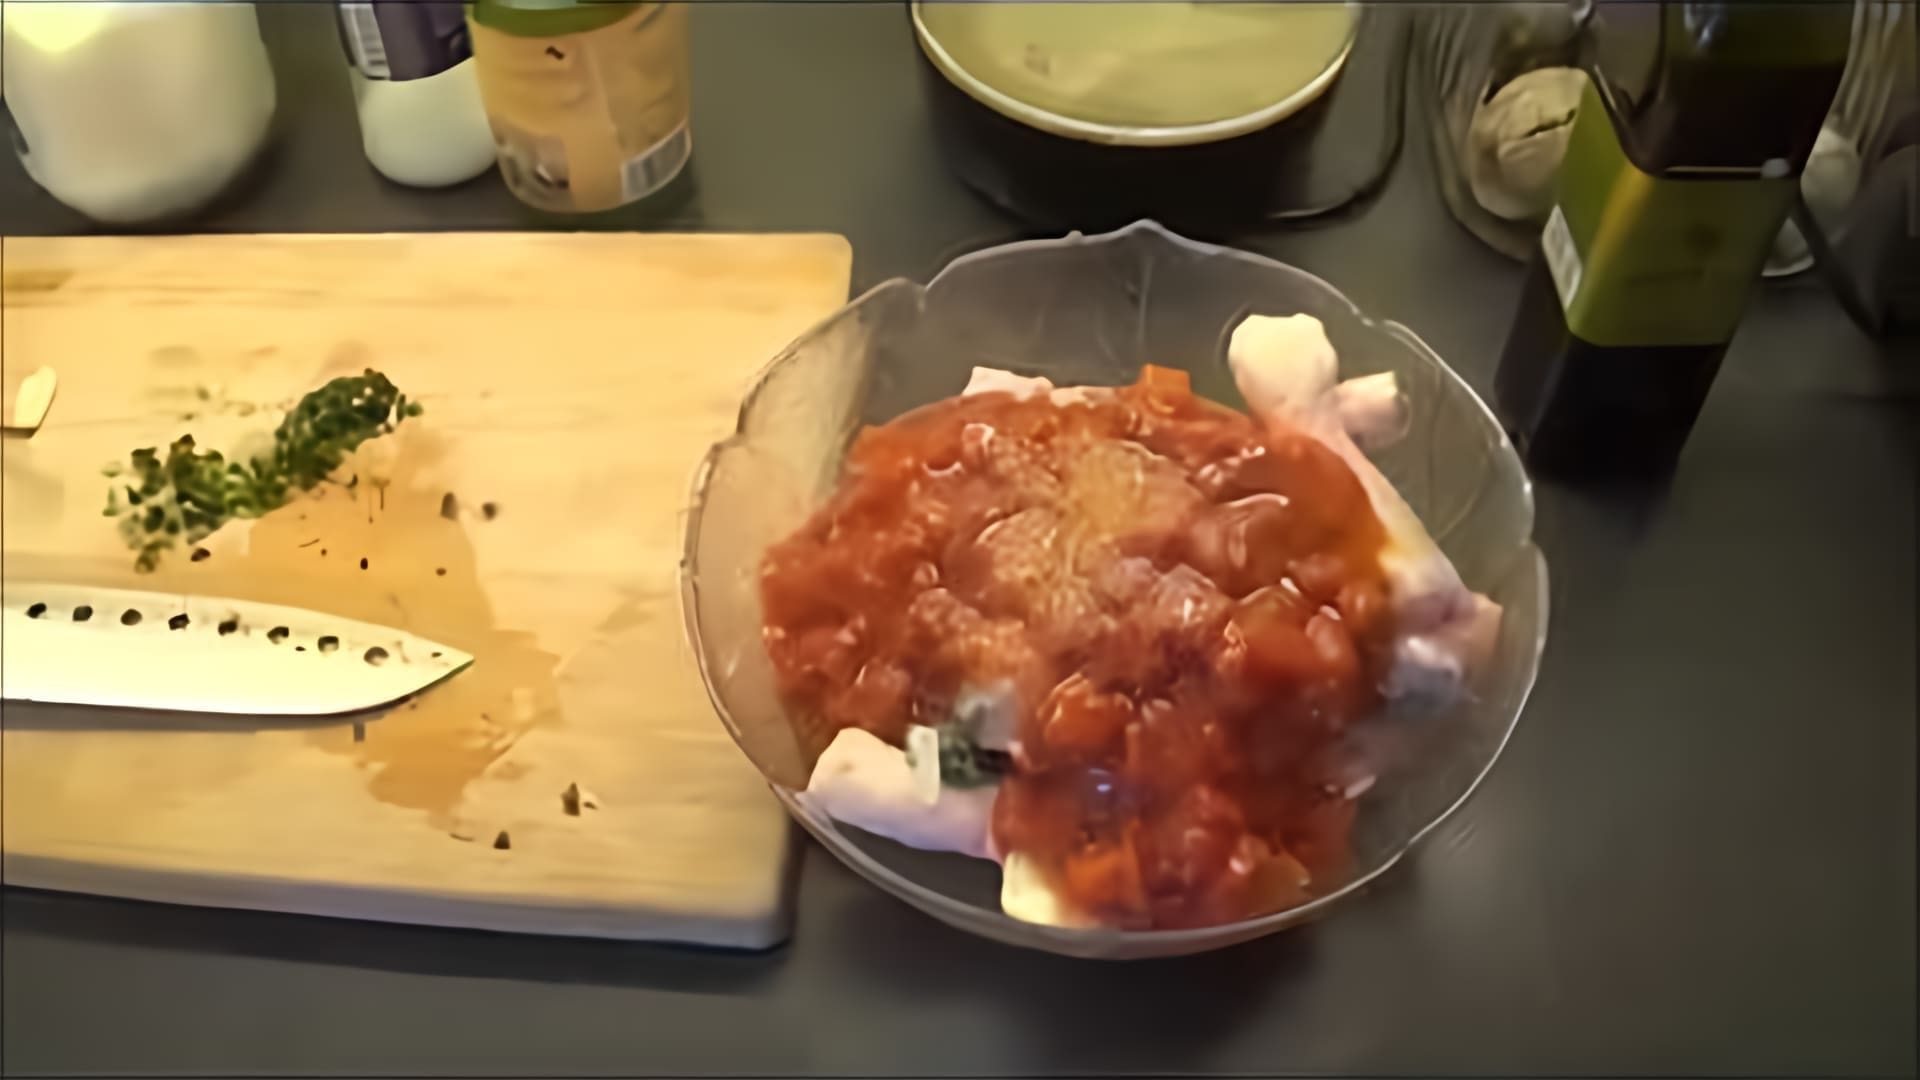 В этом видео автор предлагает рецепт приготовления куриных ножек в томатном соусе с базиликом и чесноком